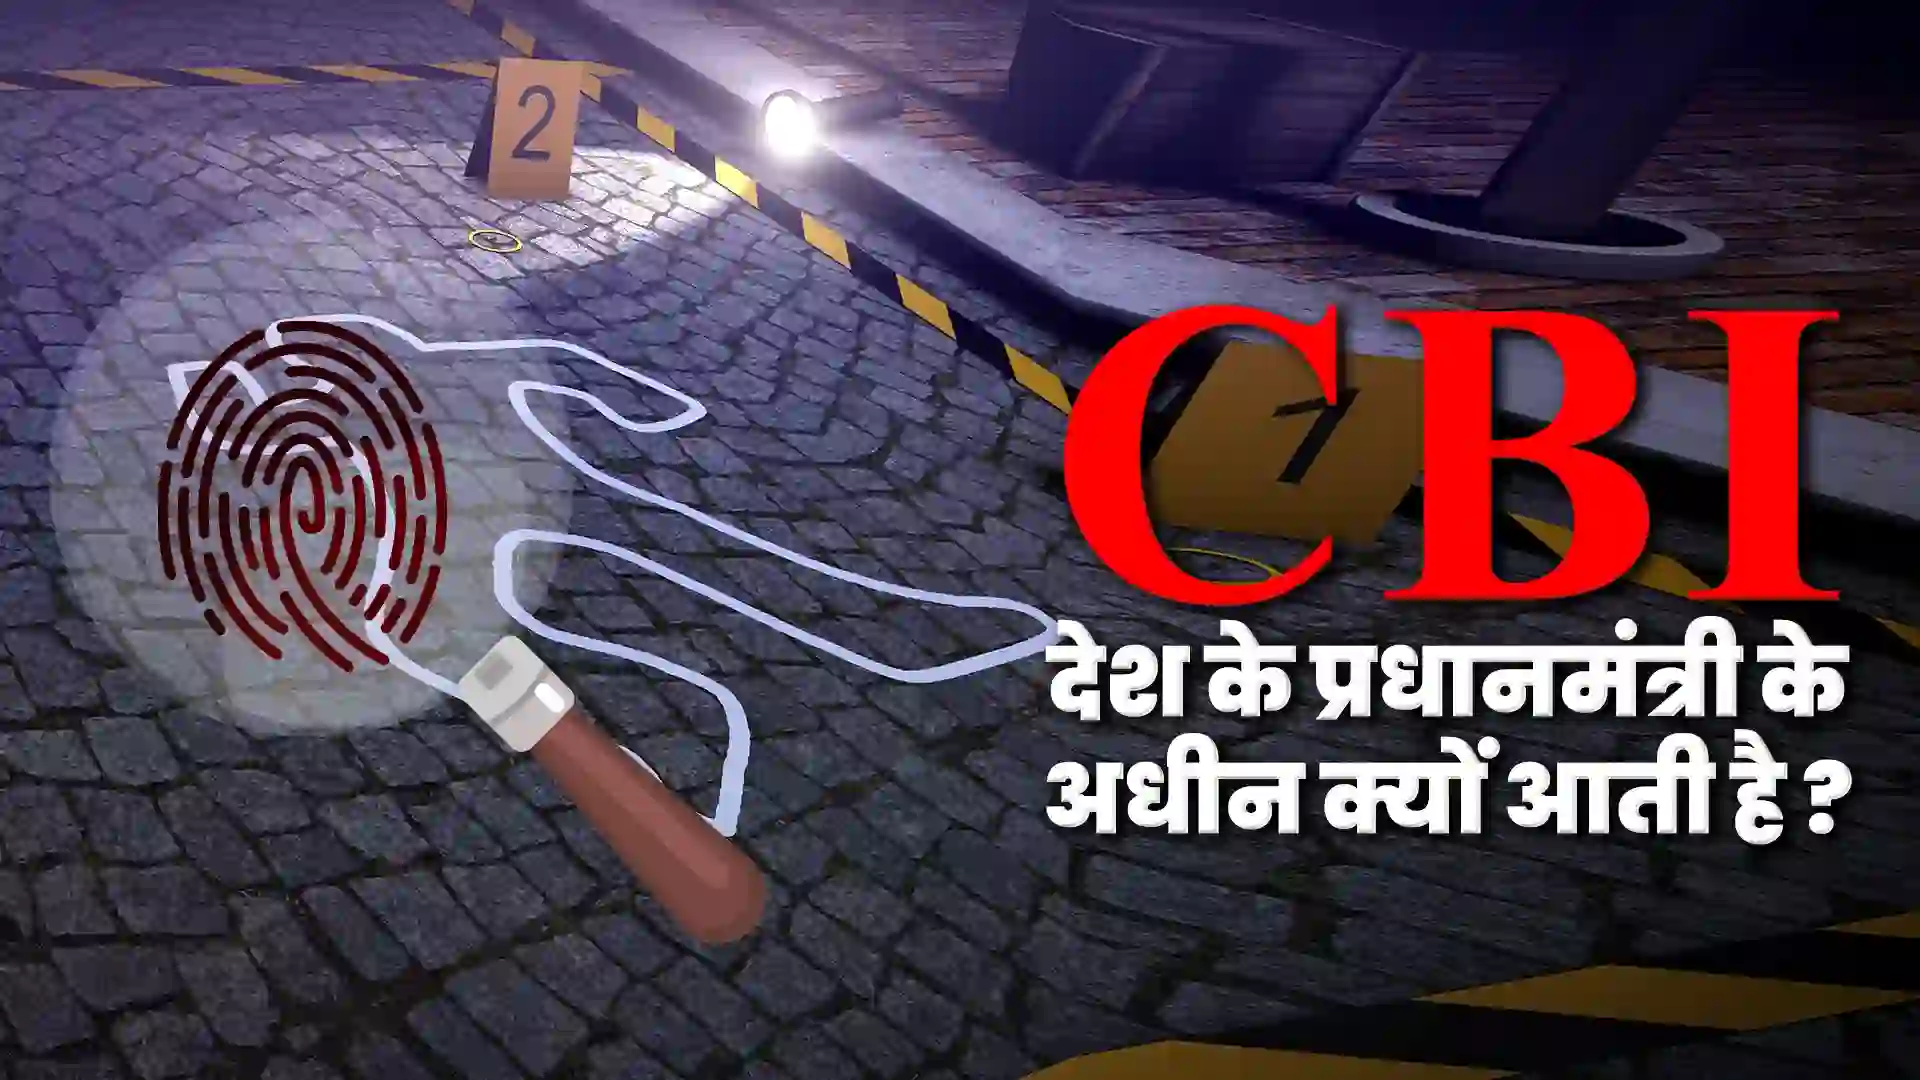  CBI देश के प्रधानमंत्री के अधीन क्यों आती है ? This Post Design By The Revolution Deshbhakt Hindustani